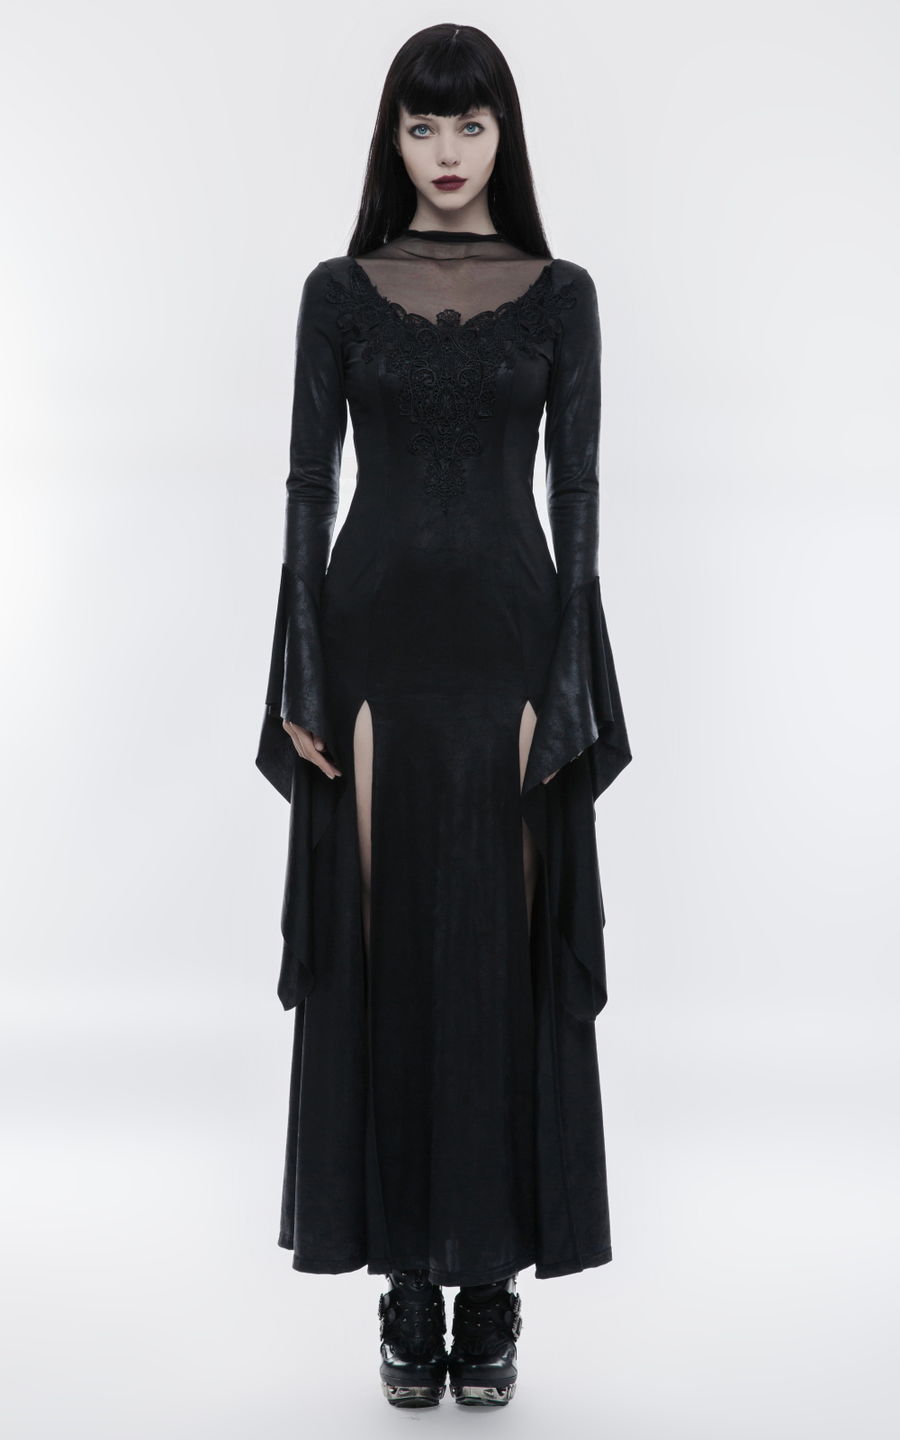 Punk Rave gothique robe longue à manches longues en dentelle noire steampunk witch Vintage occulte